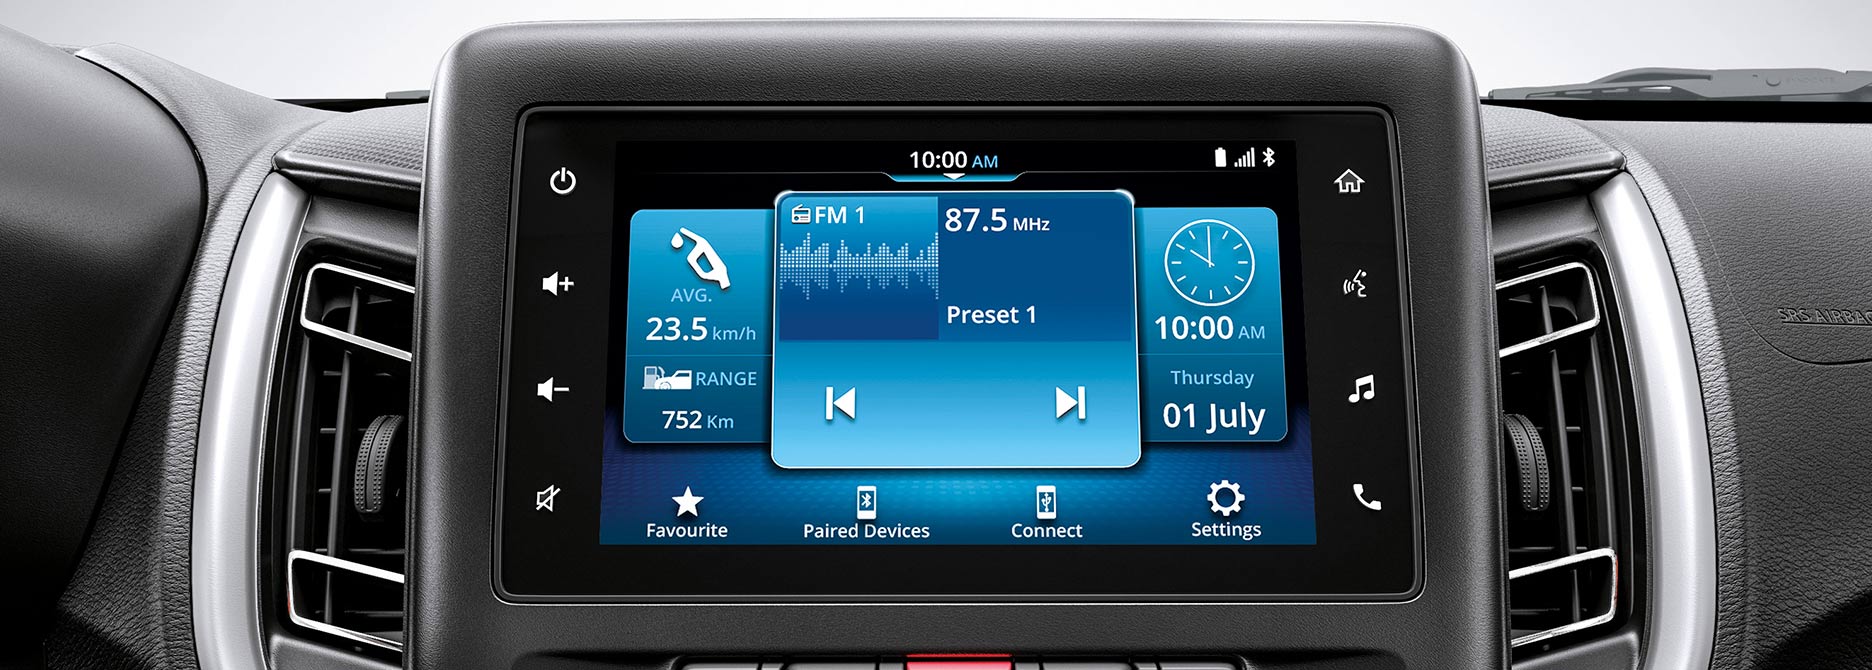 Radio multimedia con sistema Android Auto y Apple CarPlay